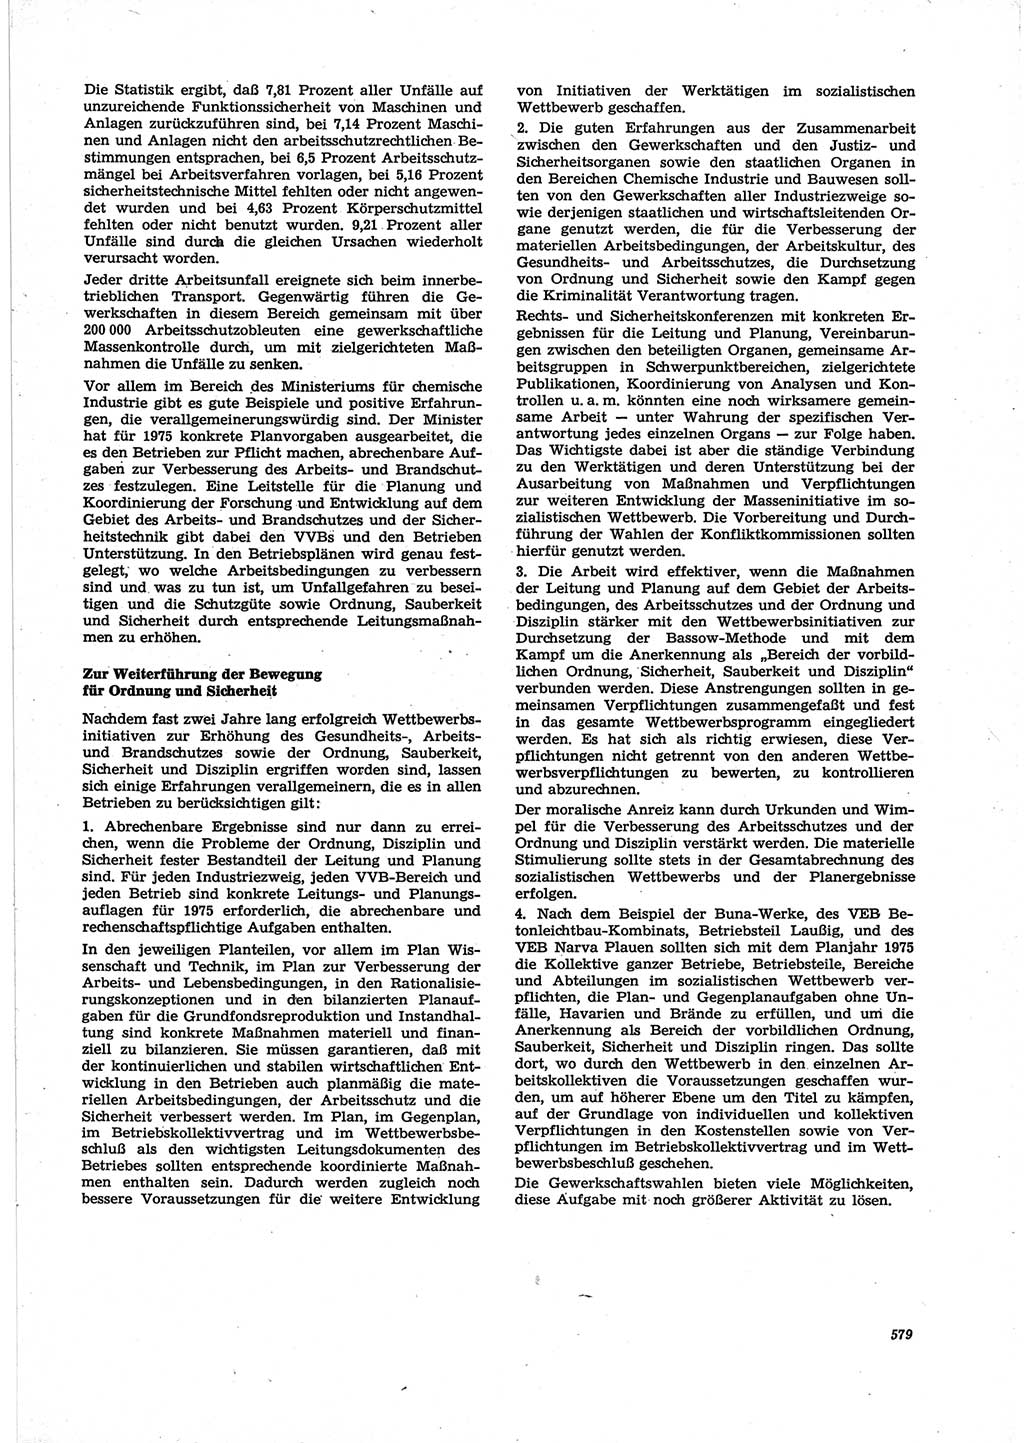 Neue Justiz (NJ), Zeitschrift für Recht und Rechtswissenschaft [Deutsche Demokratische Republik (DDR)], 28. Jahrgang 1974, Seite 579 (NJ DDR 1974, S. 579)